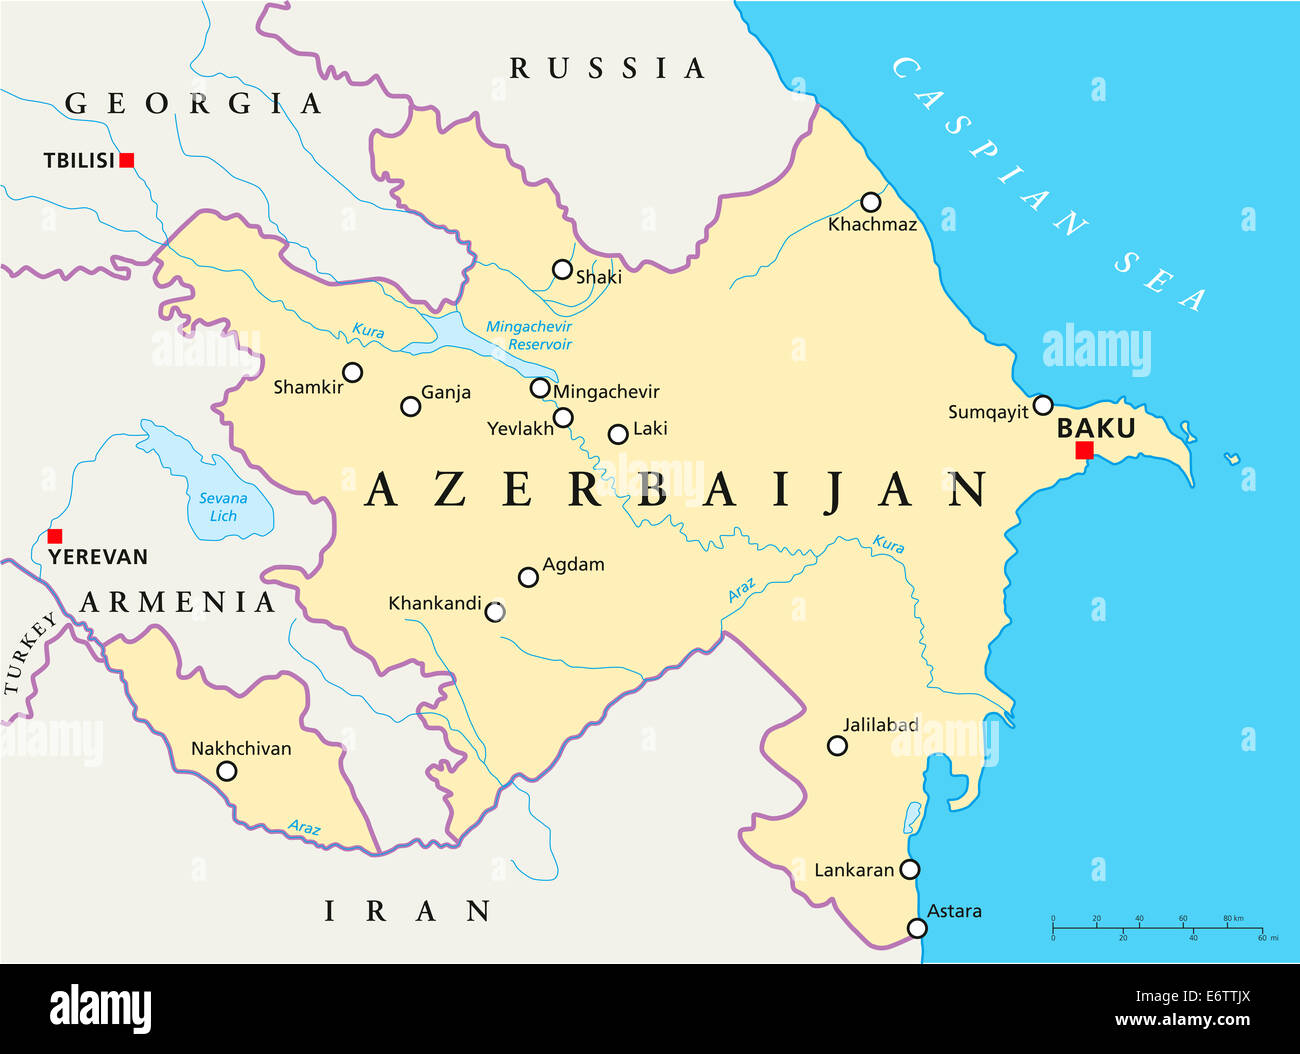 Azerbaijan Borders